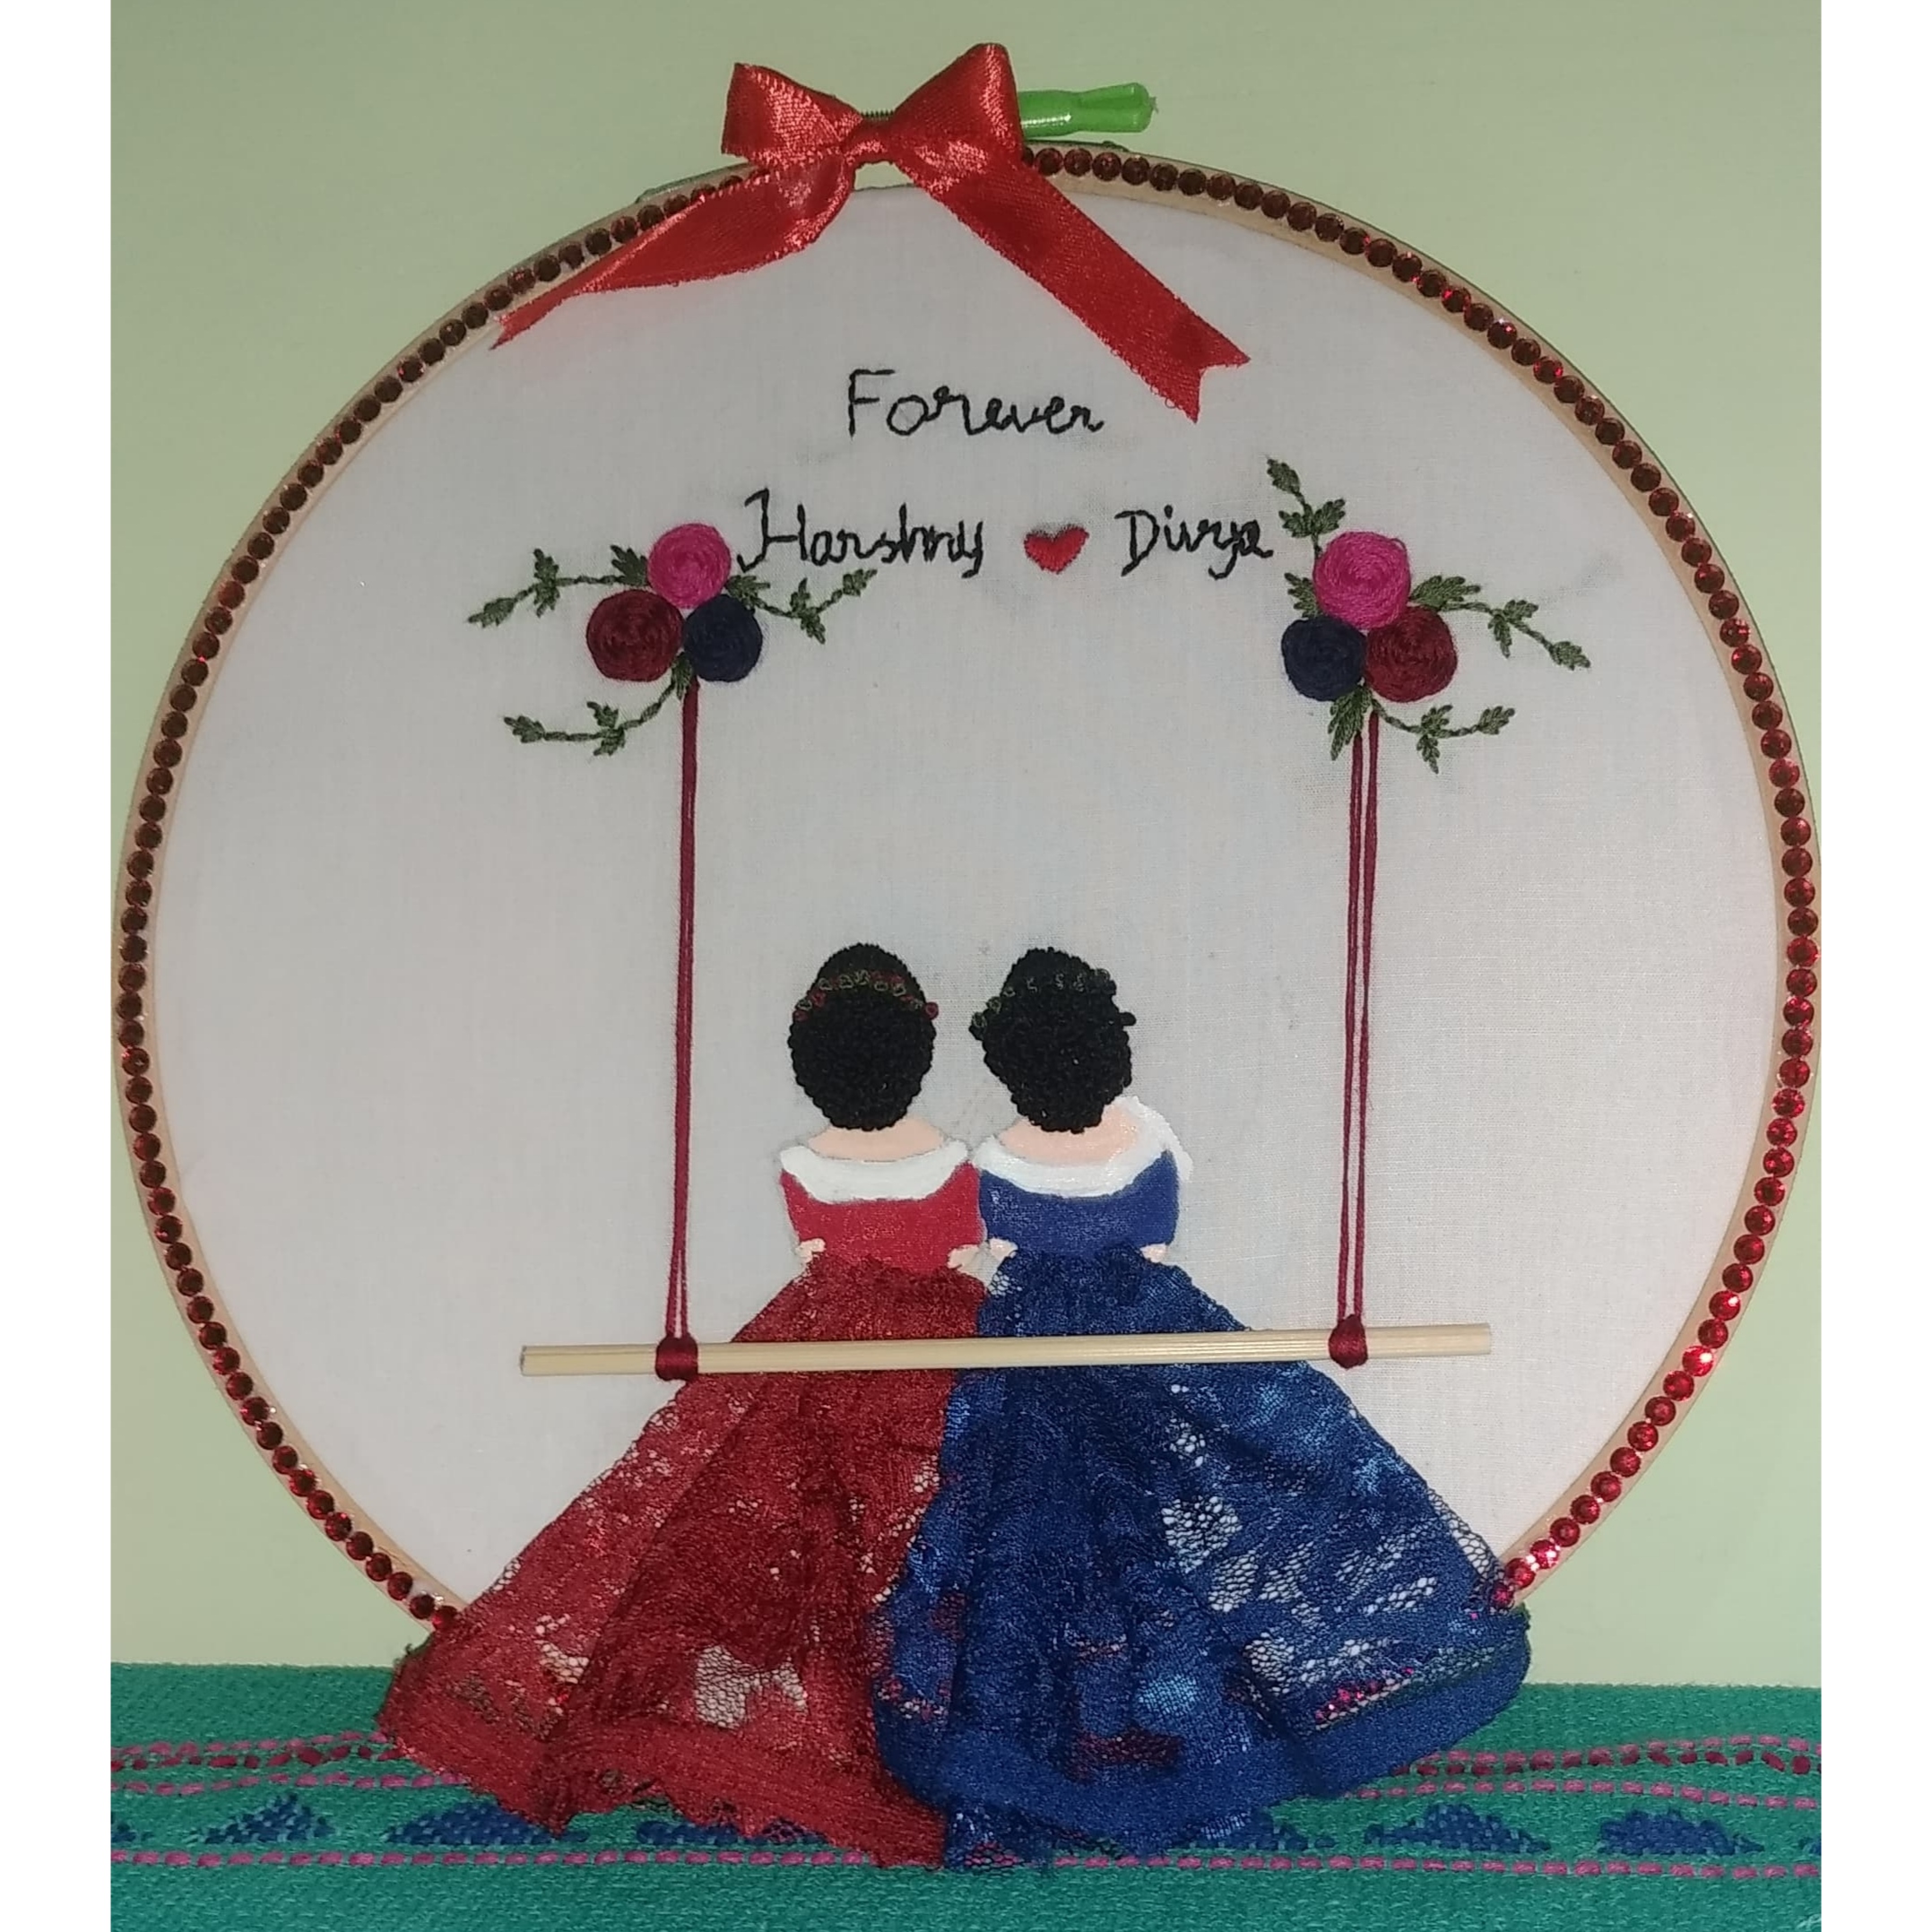 Bestie Birthday embroidery hoop